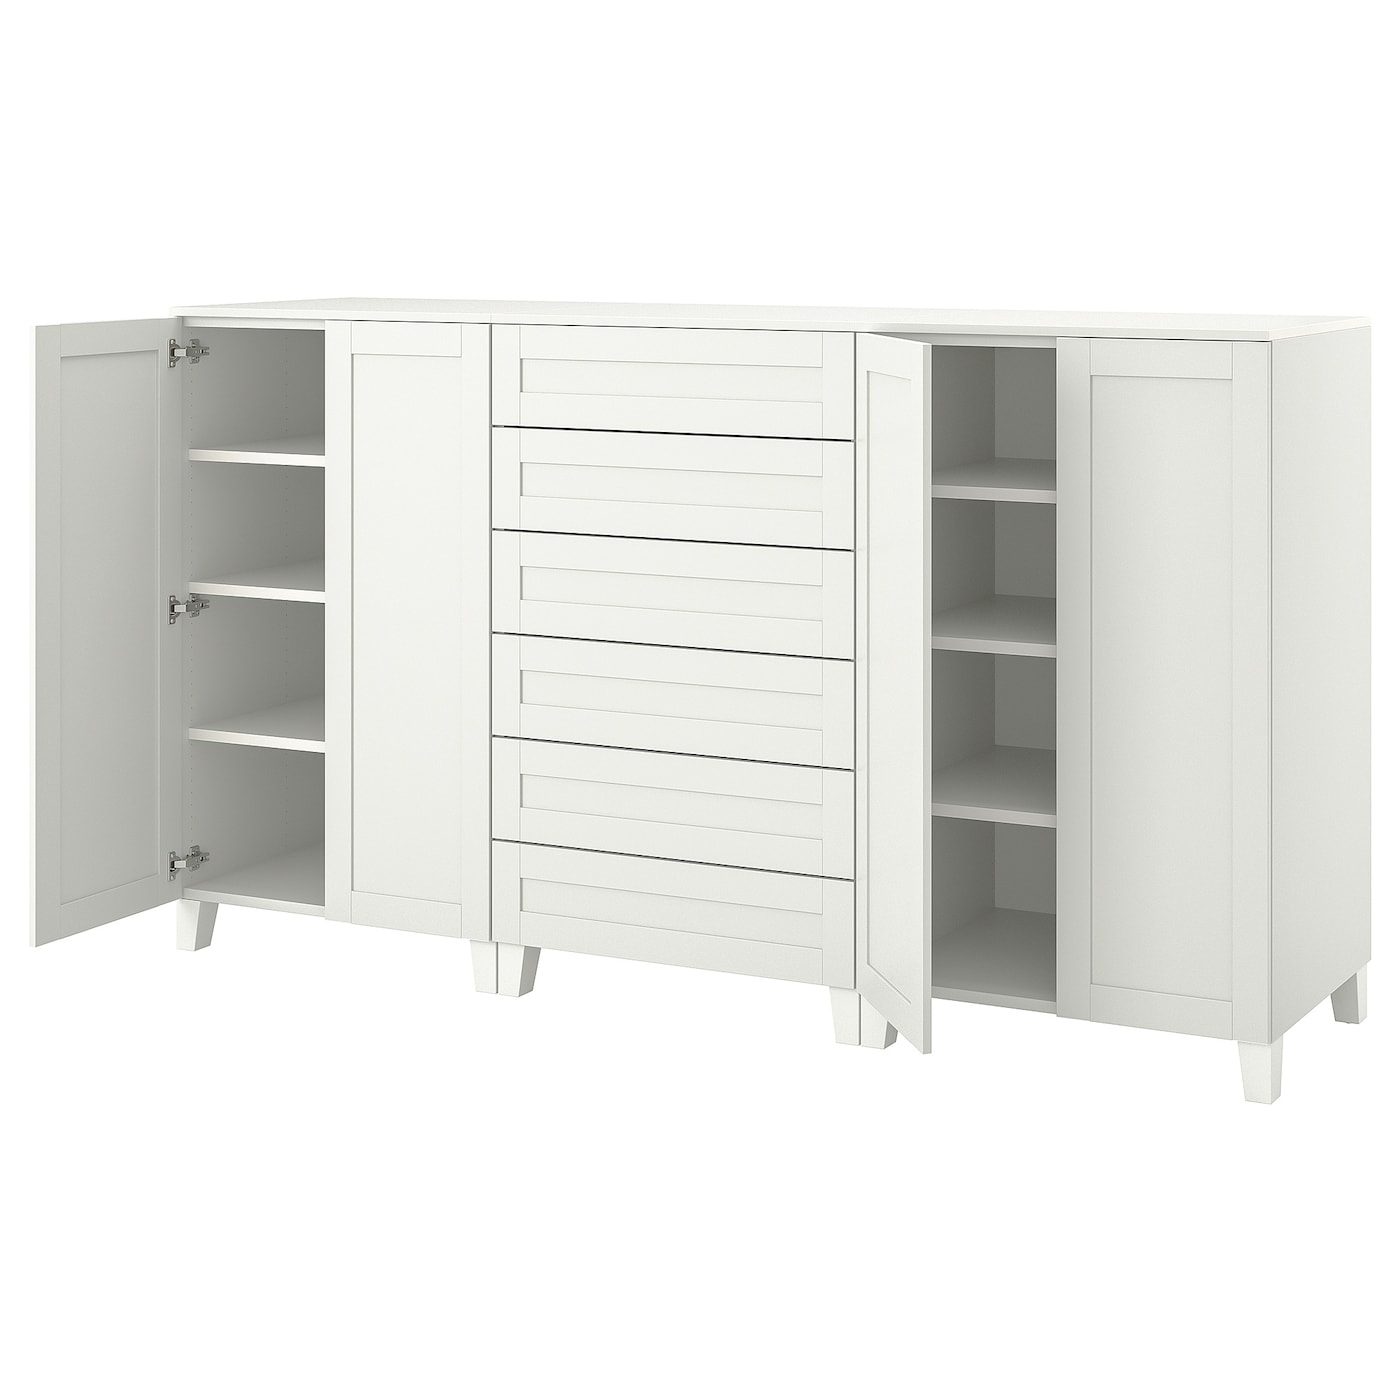 Шкаф - PLATSA/ SANNIDAL  IKEA/ ПЛАТСА/САННИДАЛЬ ИКЕА, 240x57x133 см, белый